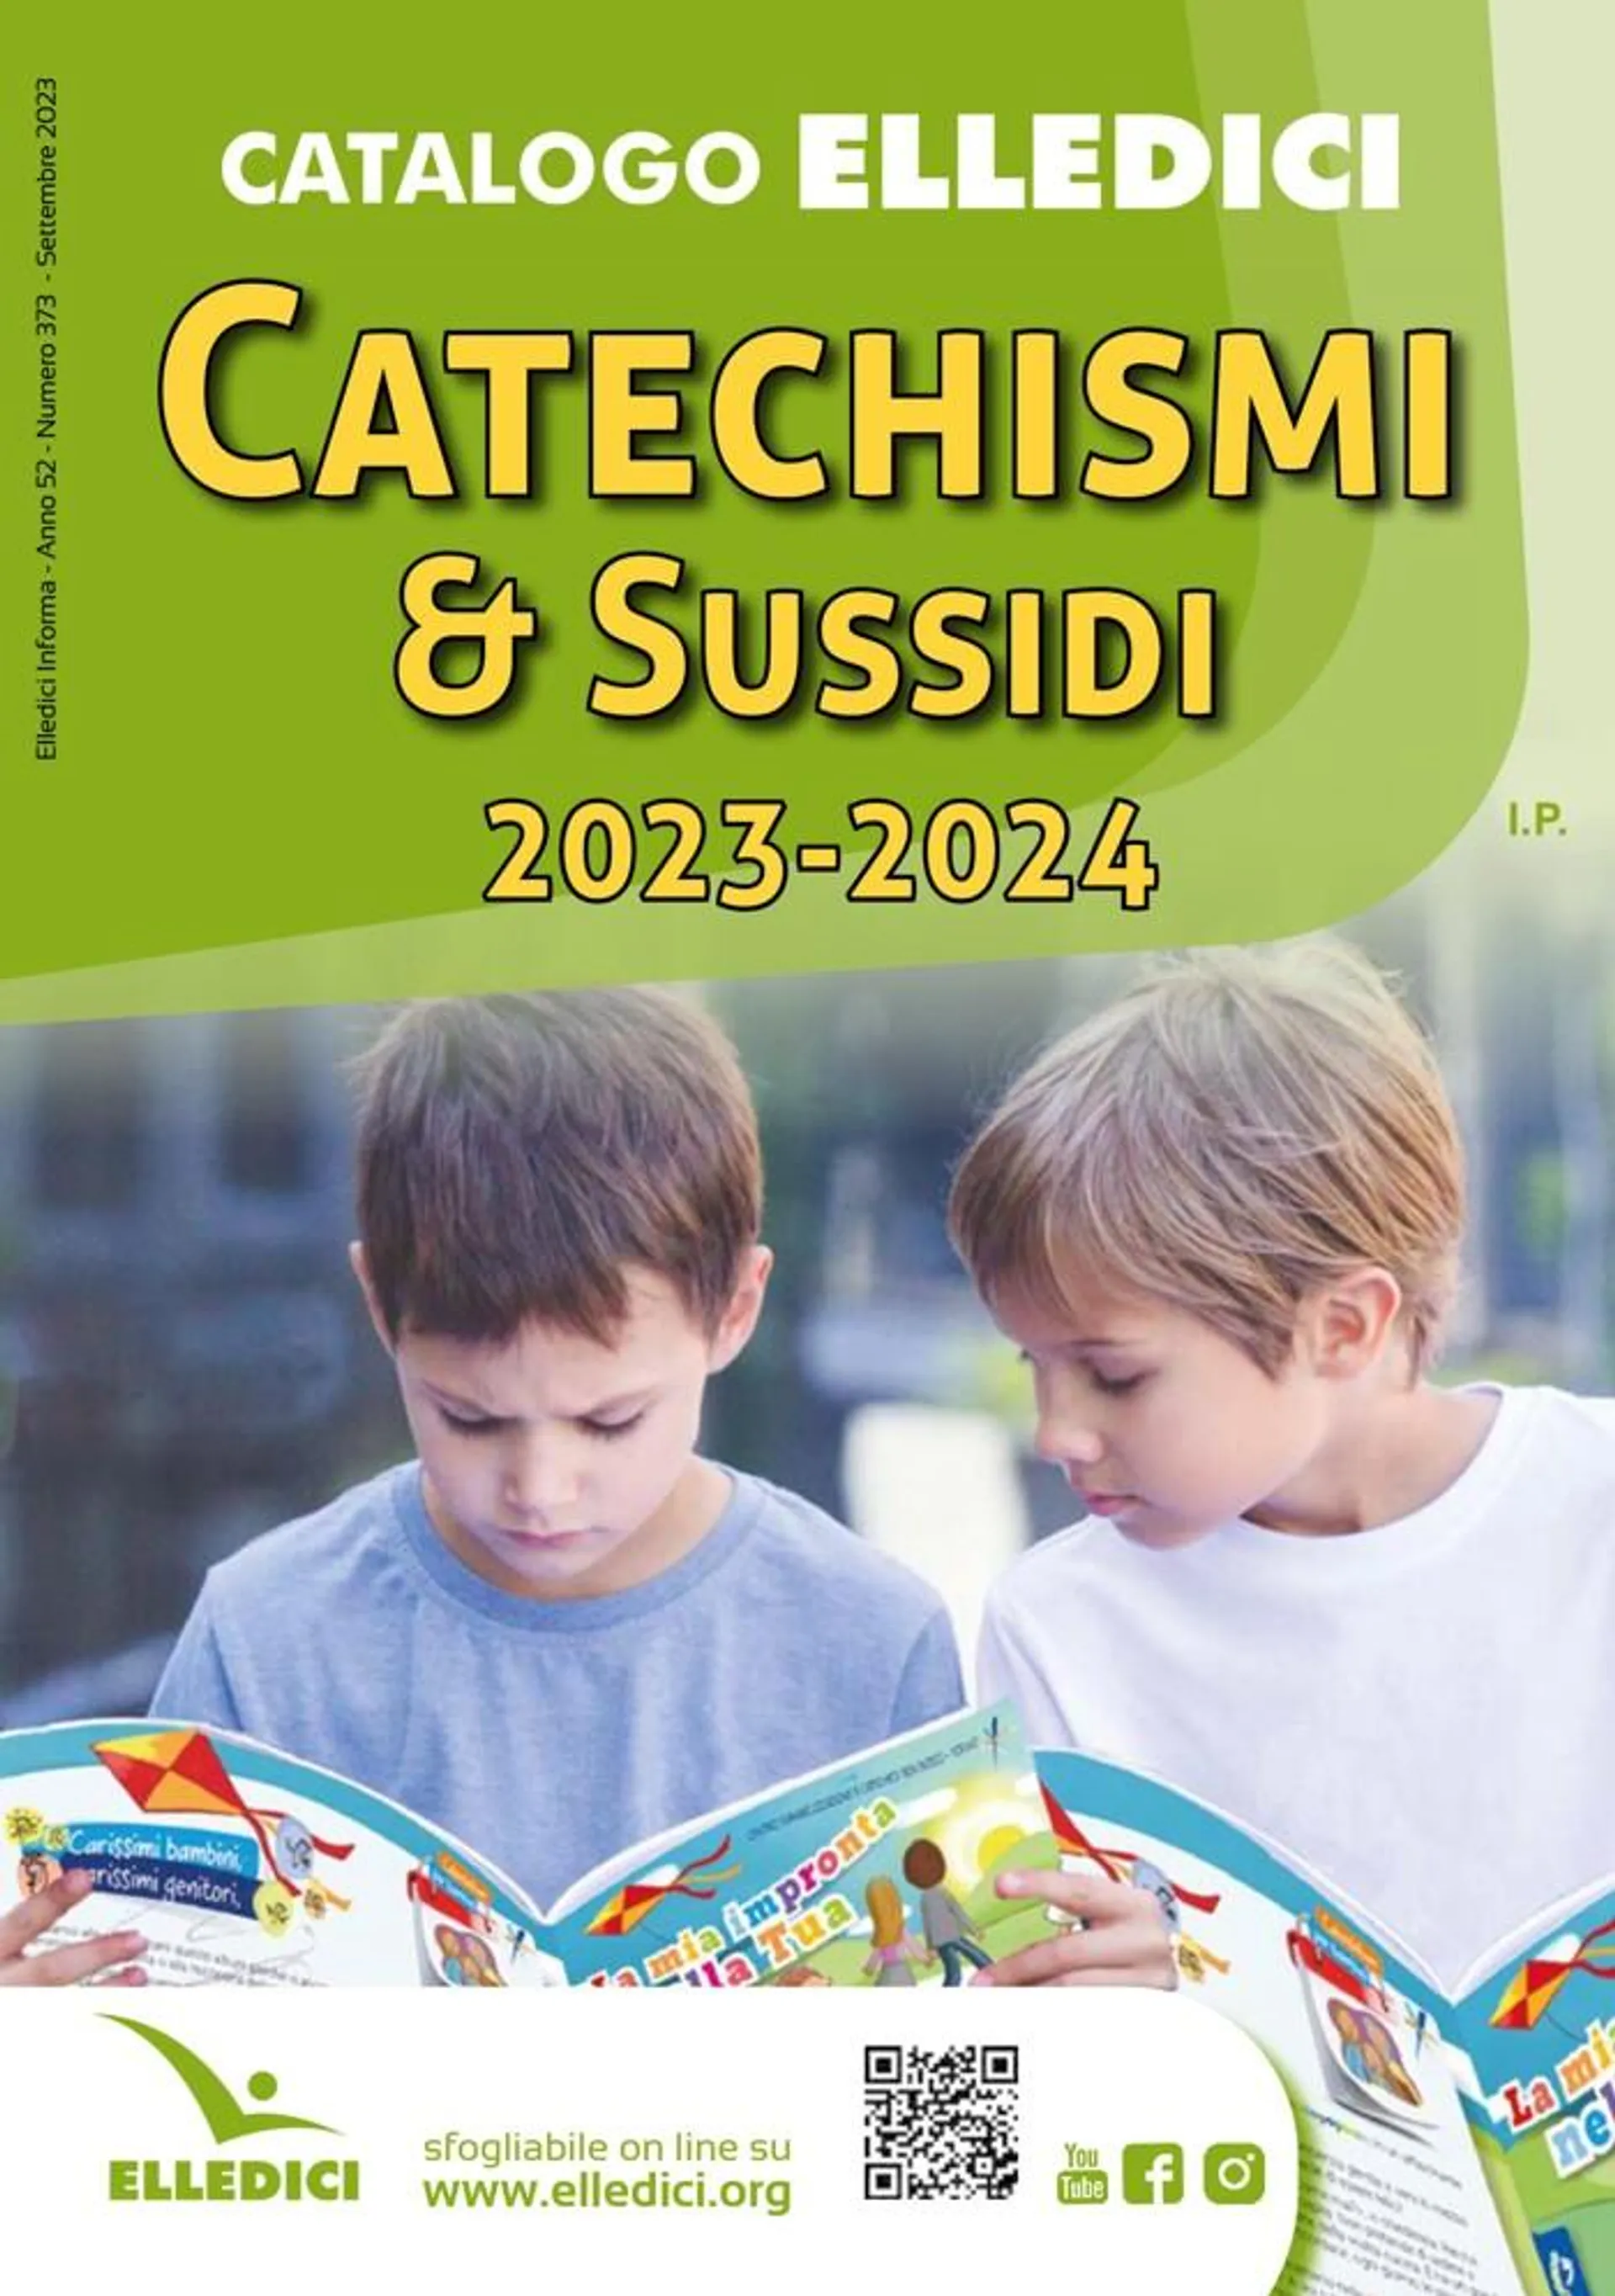  Catechismi & susssidi - 1